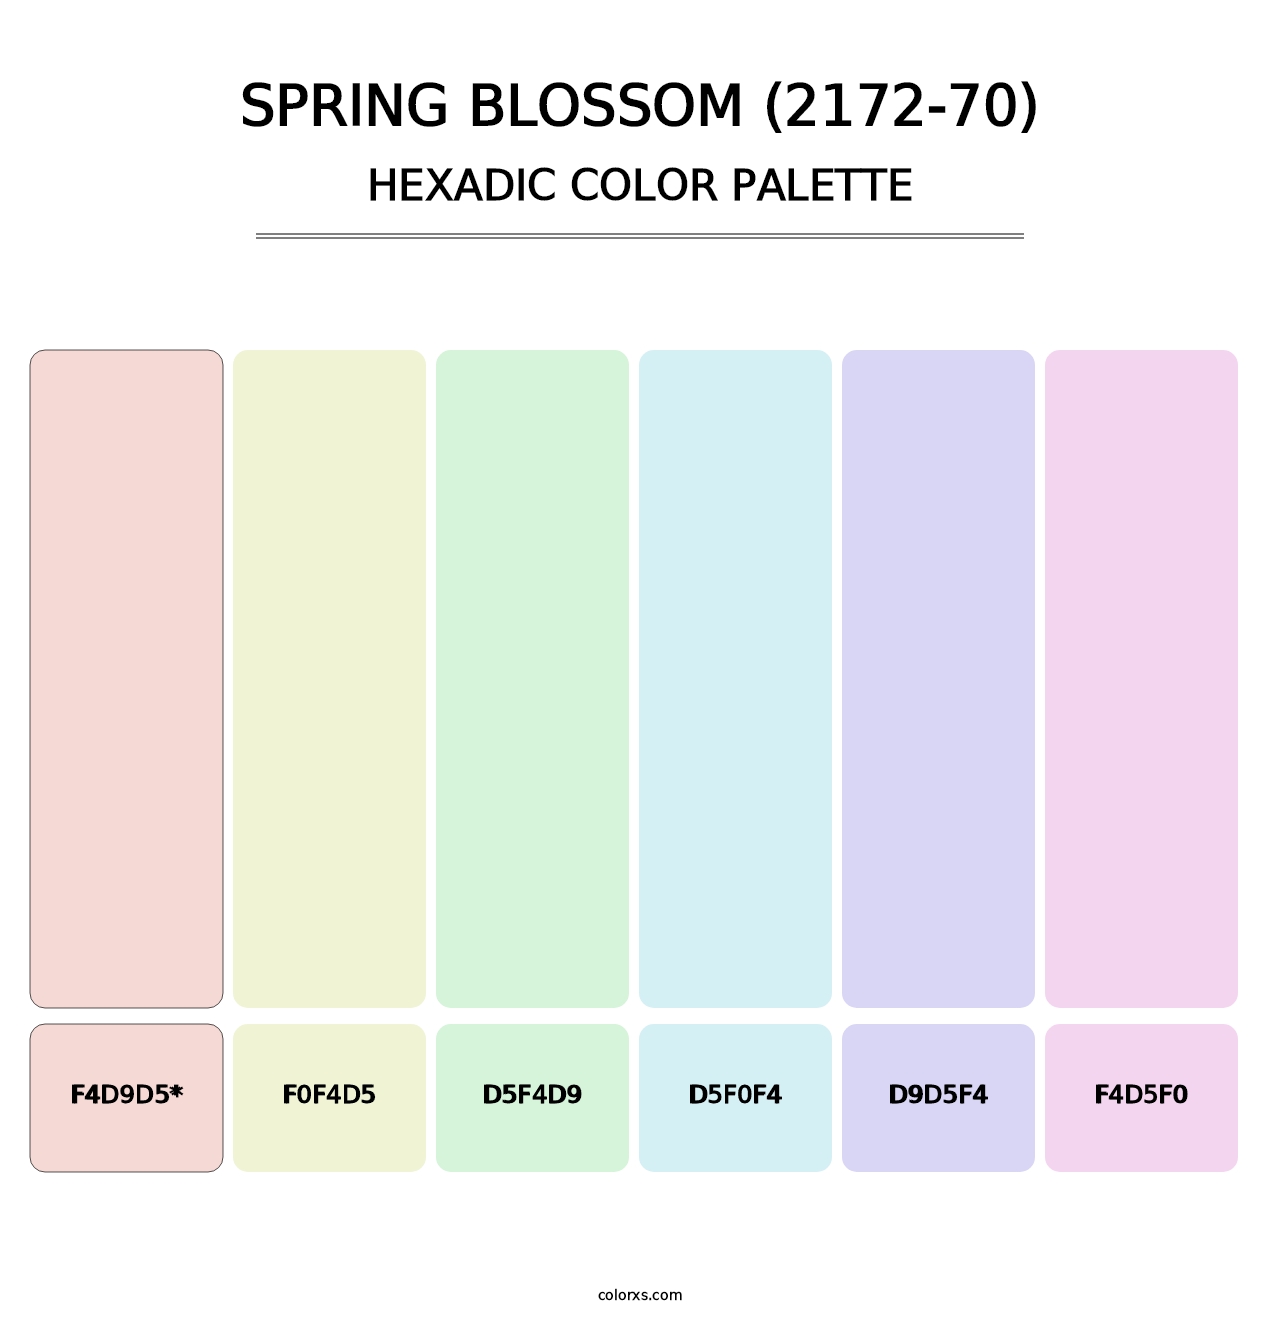 Spring Blossom (2172-70) - Hexadic Color Palette